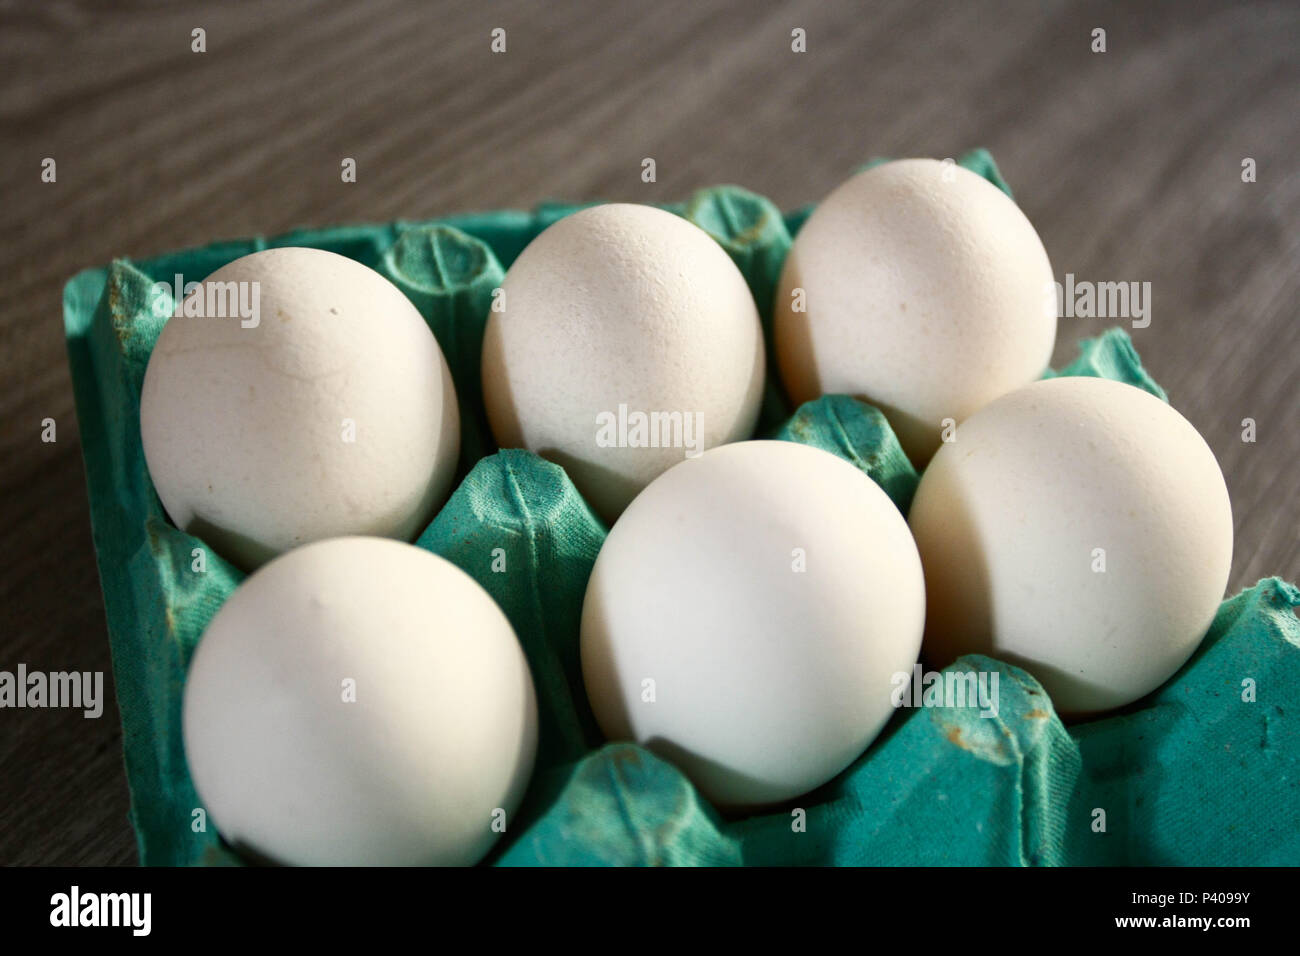 Bandeija com 06 ou meia dúzia de ovos brancos Stock Photo - Alamy